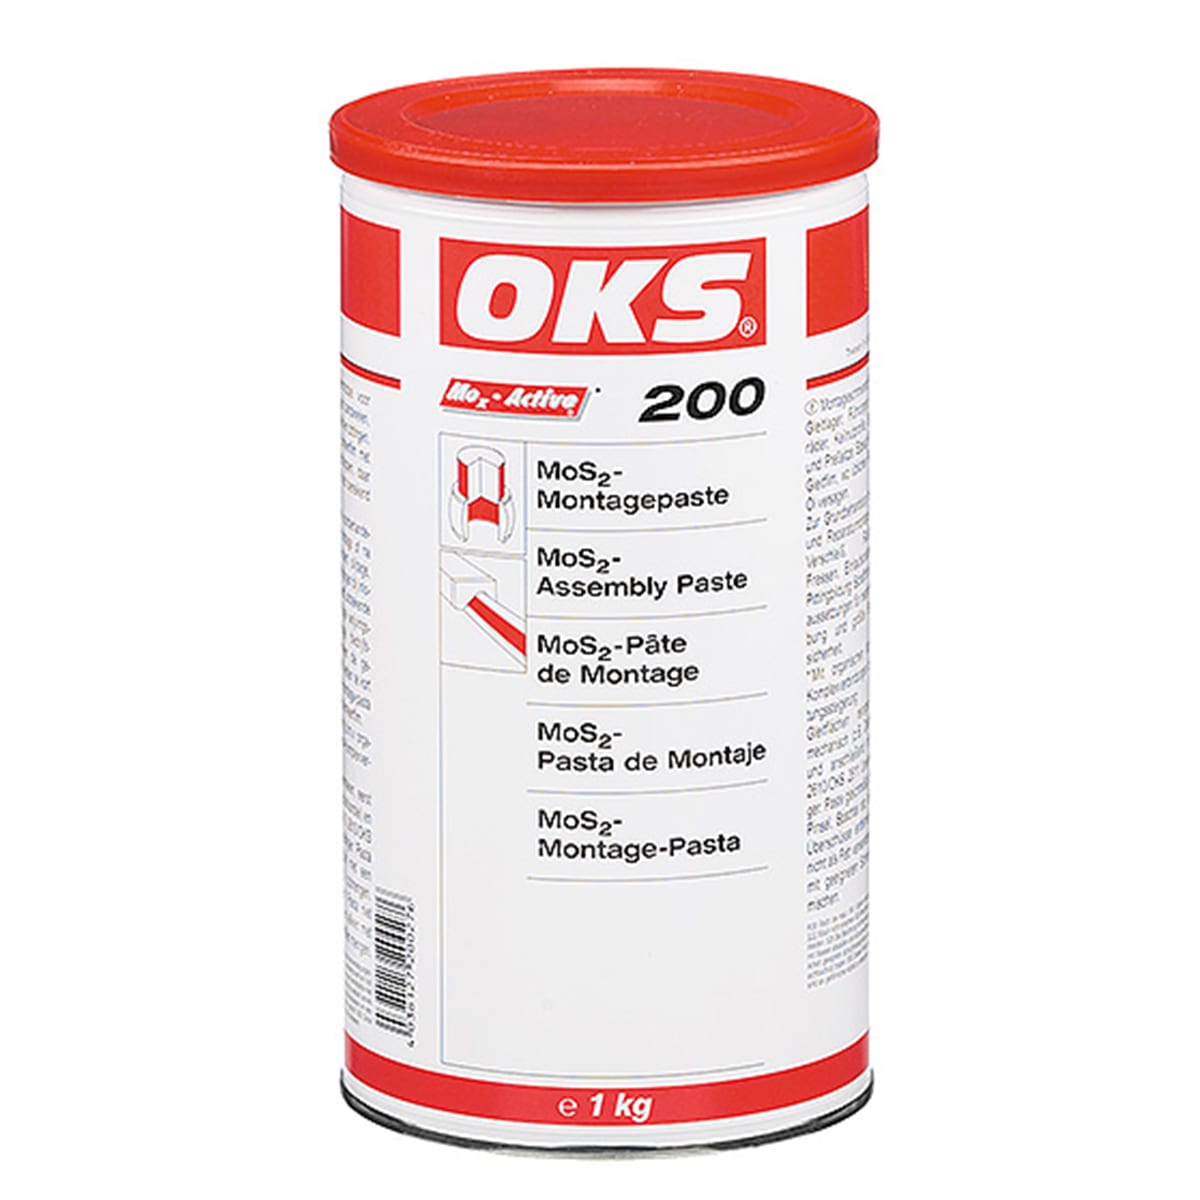 OKS 200 - MoS2-Montagepaste